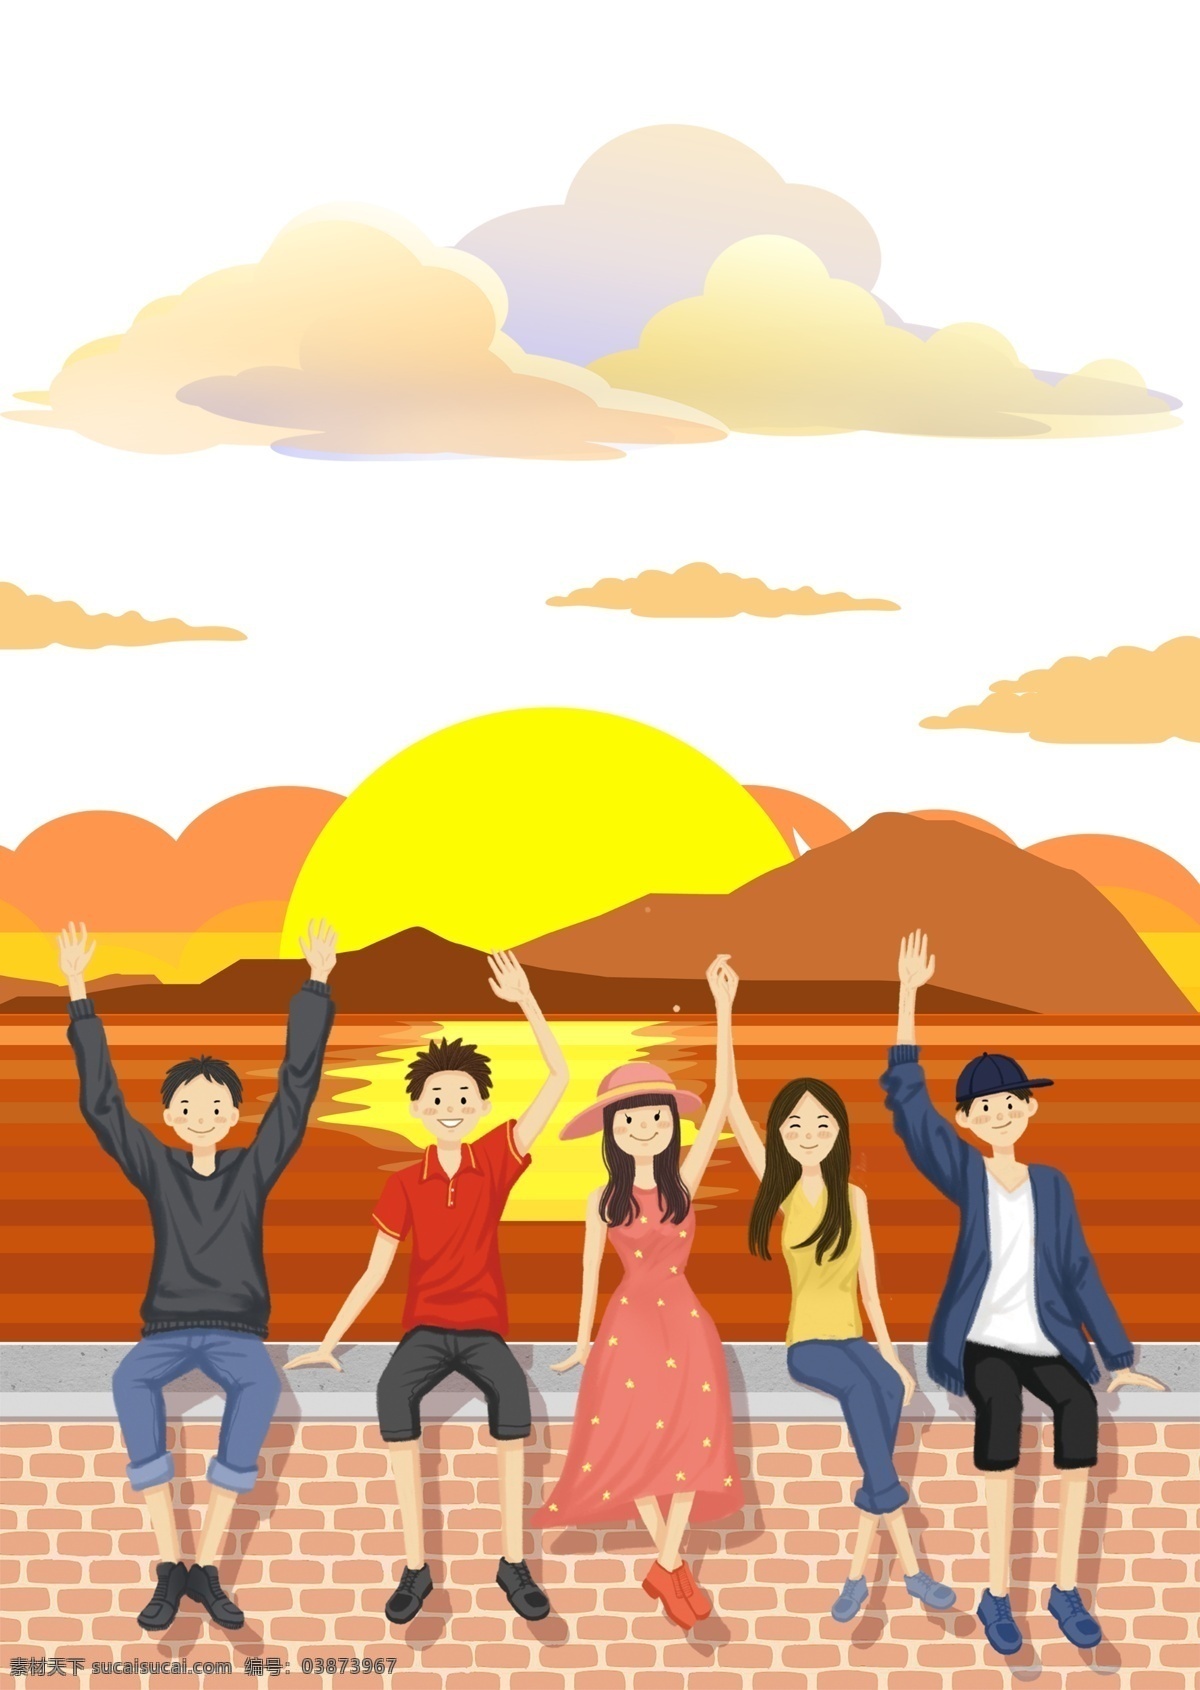 五 四 青年节 插画 海报 背景 五四 青年 活力 潮气蓬勃 积极向上 榜样 祖国花朵 太阳 期望未来 黄色 日出